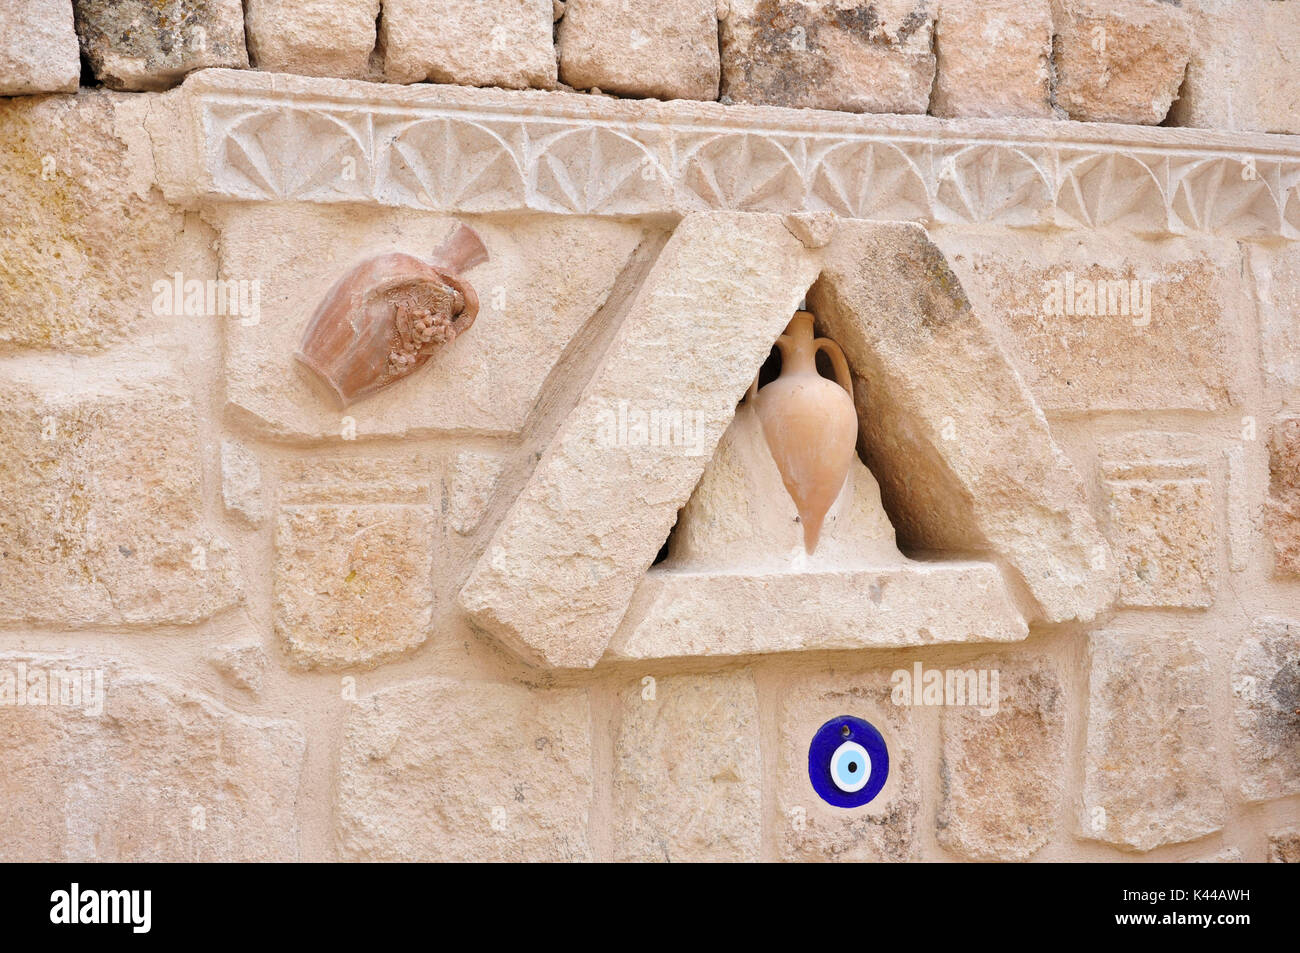 Typische Skulptur an der Wand auf die alten Häuser der Kappadokia Region in der Türkei. In diese Skulptur sind die "Töpferei", die Vasen aus Terrakotta und in blauer Farbe die Allah Auge dargestellt. Die Allah Auge hat das Ziel, zu schützen. Stockfoto